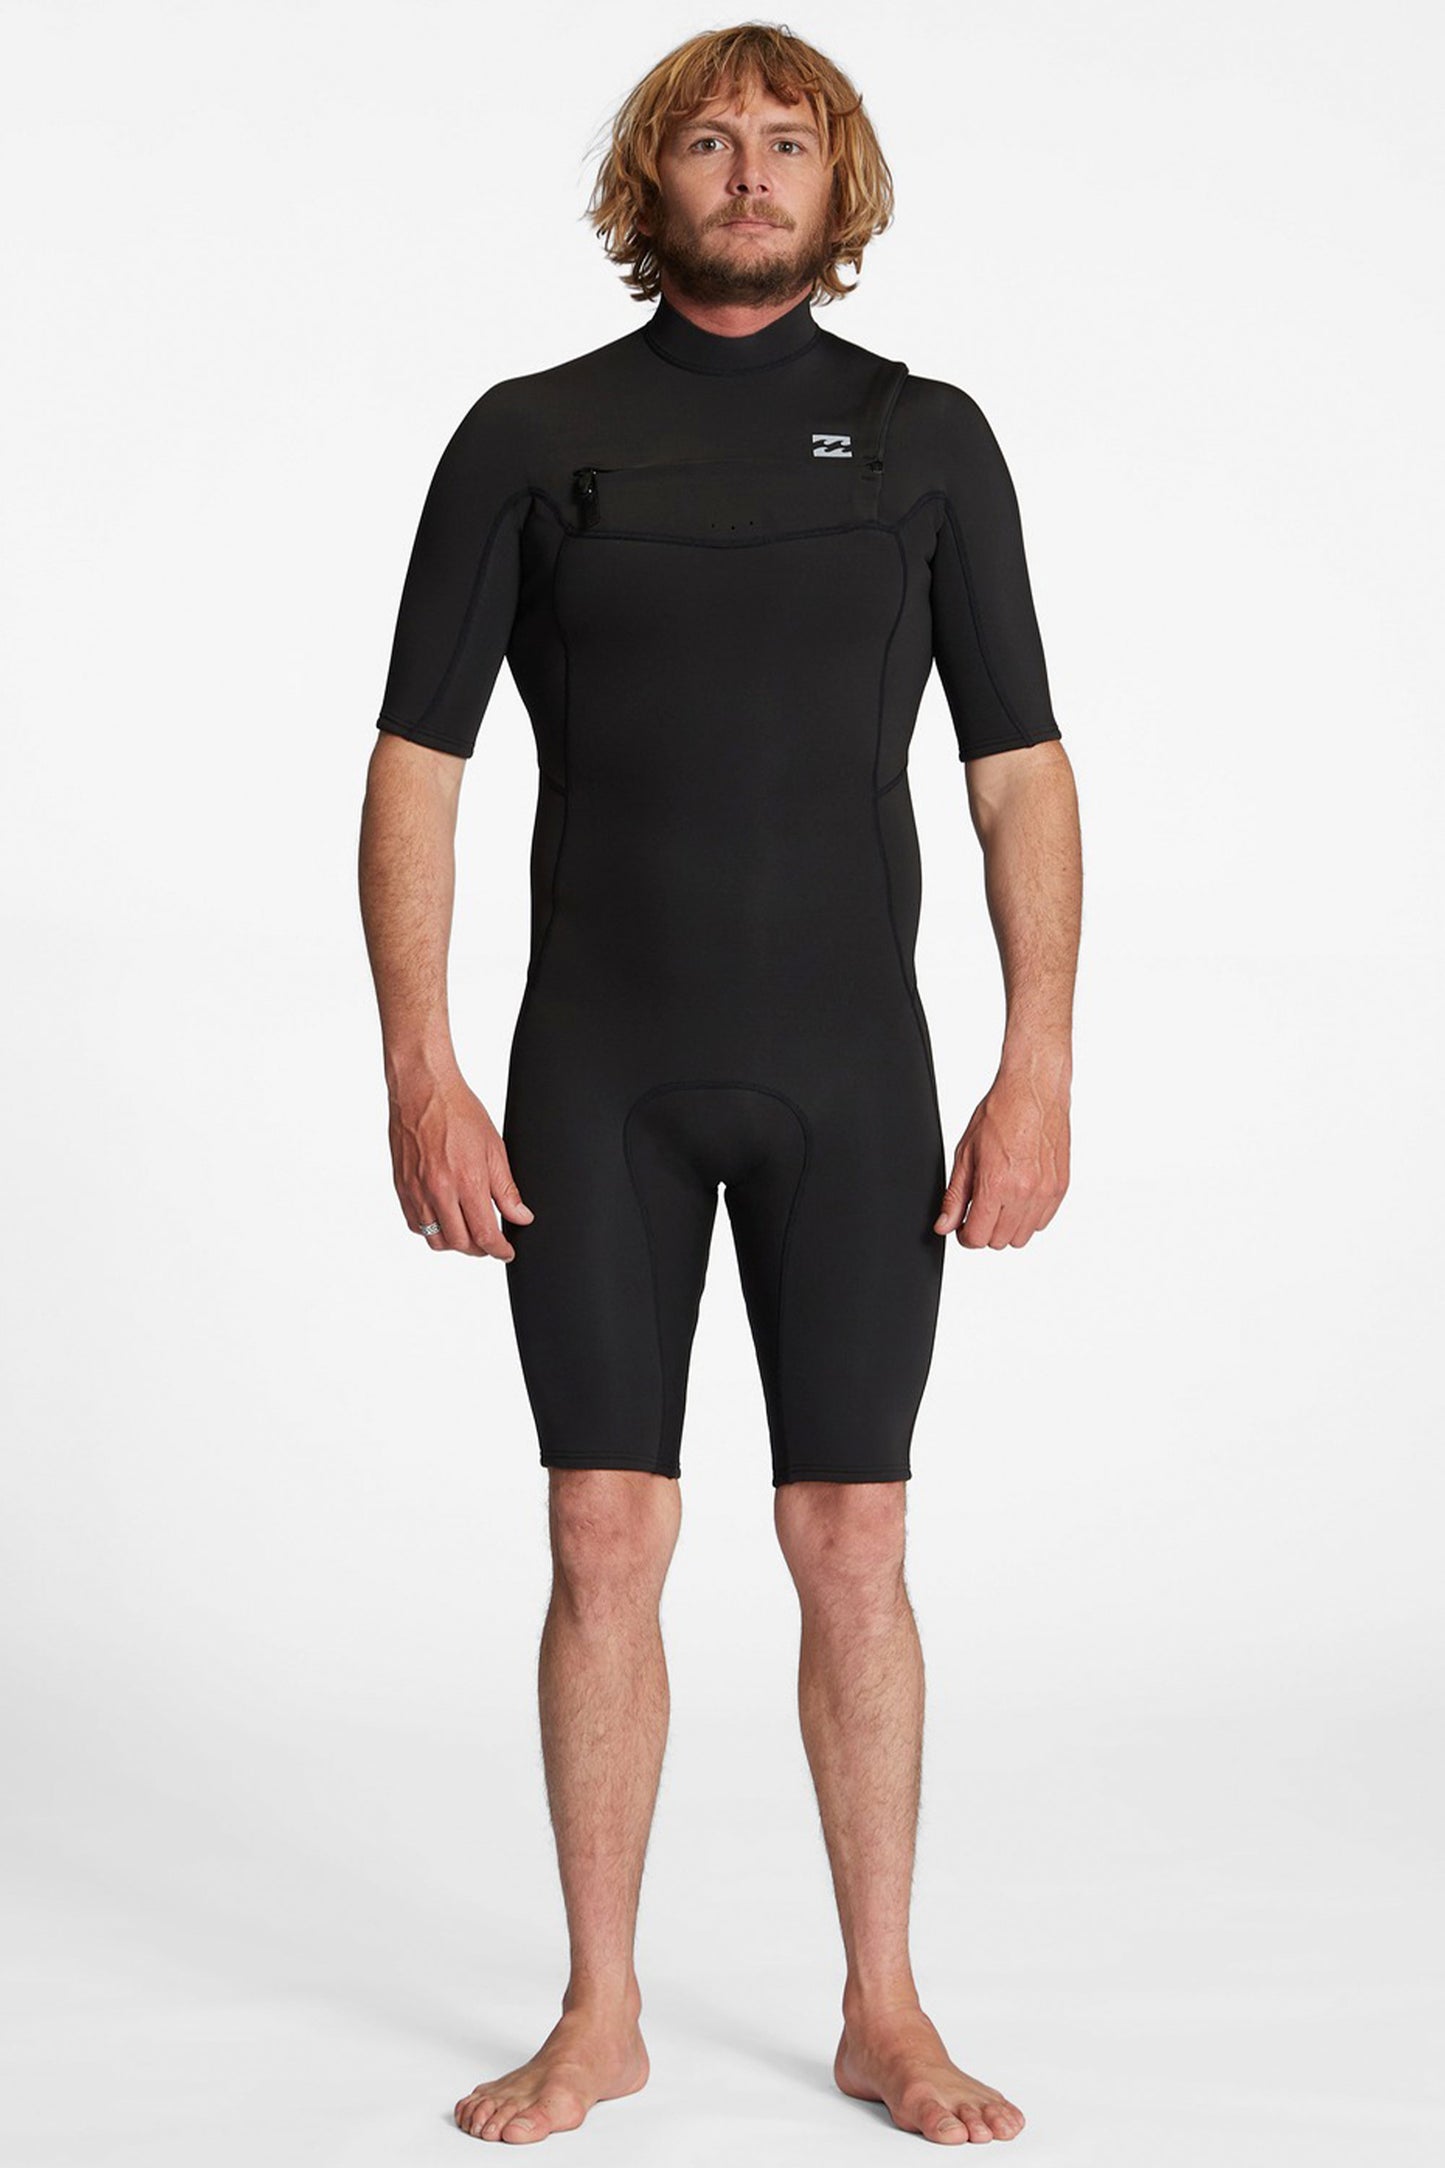 Pukas-Surf-Shop-billabong-wetsuit-Billabong-absolute-2-2mm-chest-zip